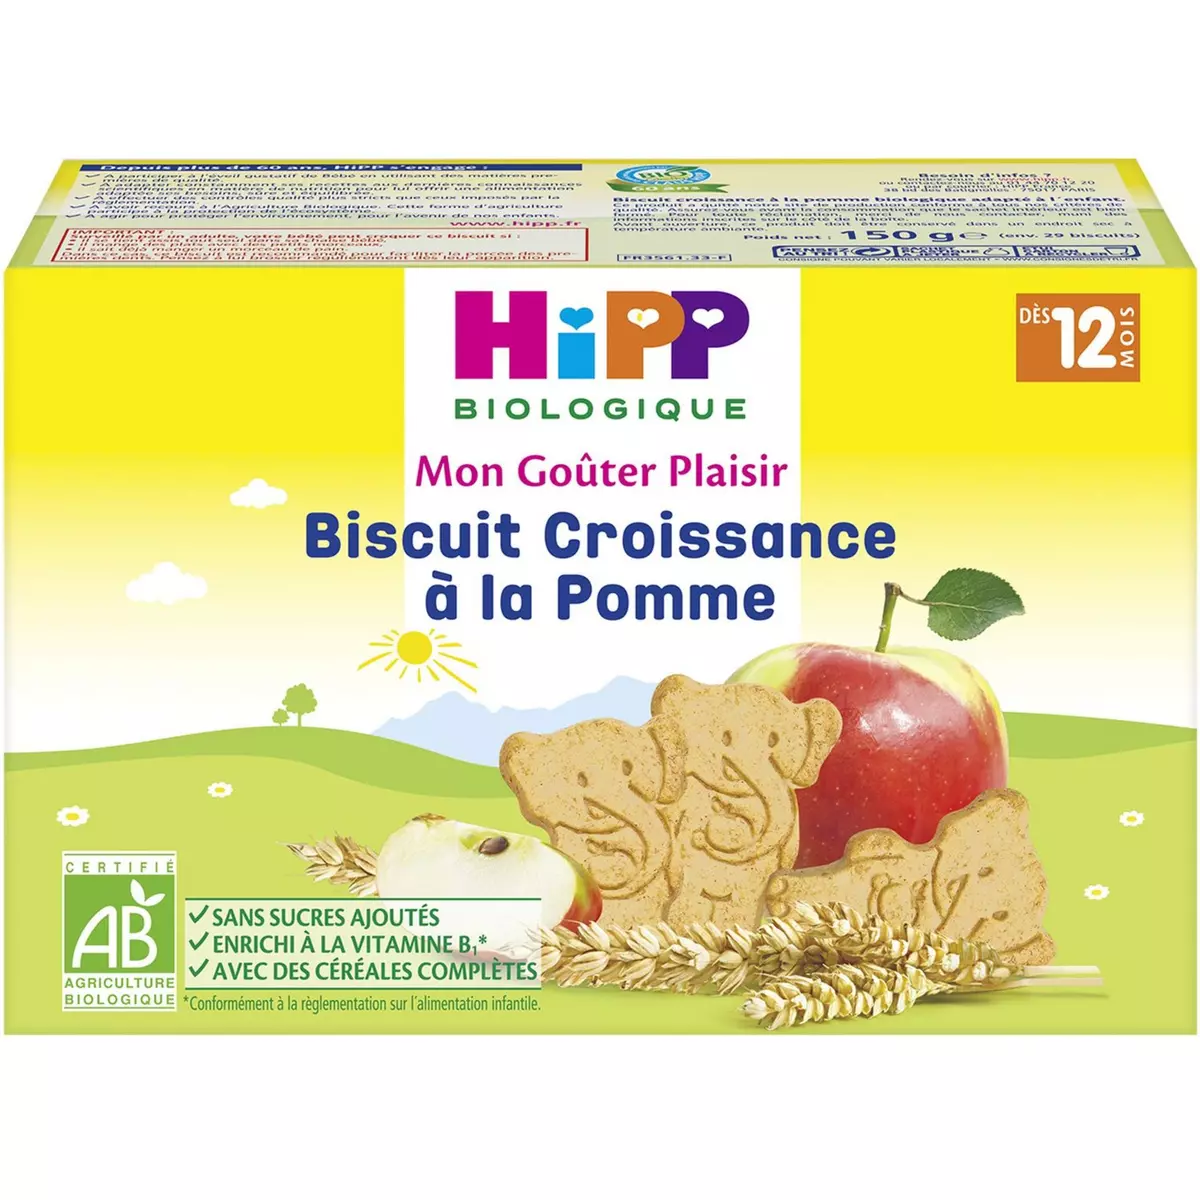 HIPP Mon goûter plaisir Biscuits croissance à la pomme bio dès 12